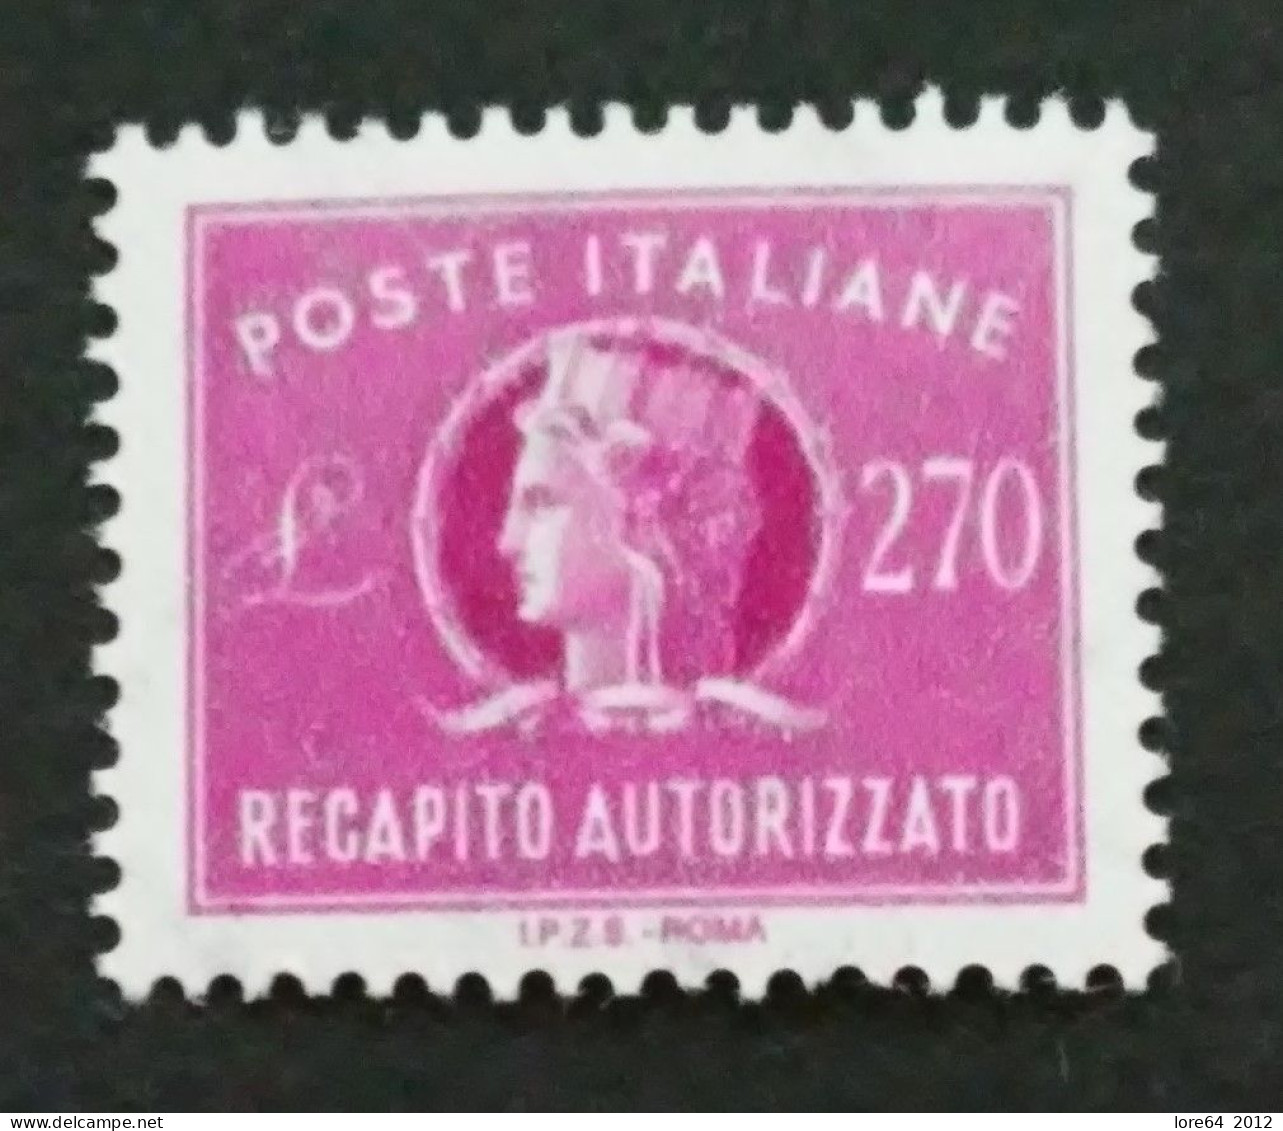 ITALIA 1984 - Recapito Autorizzato N° Catalogo Unificato 16 Nuovo** - Express/pneumatic Mail